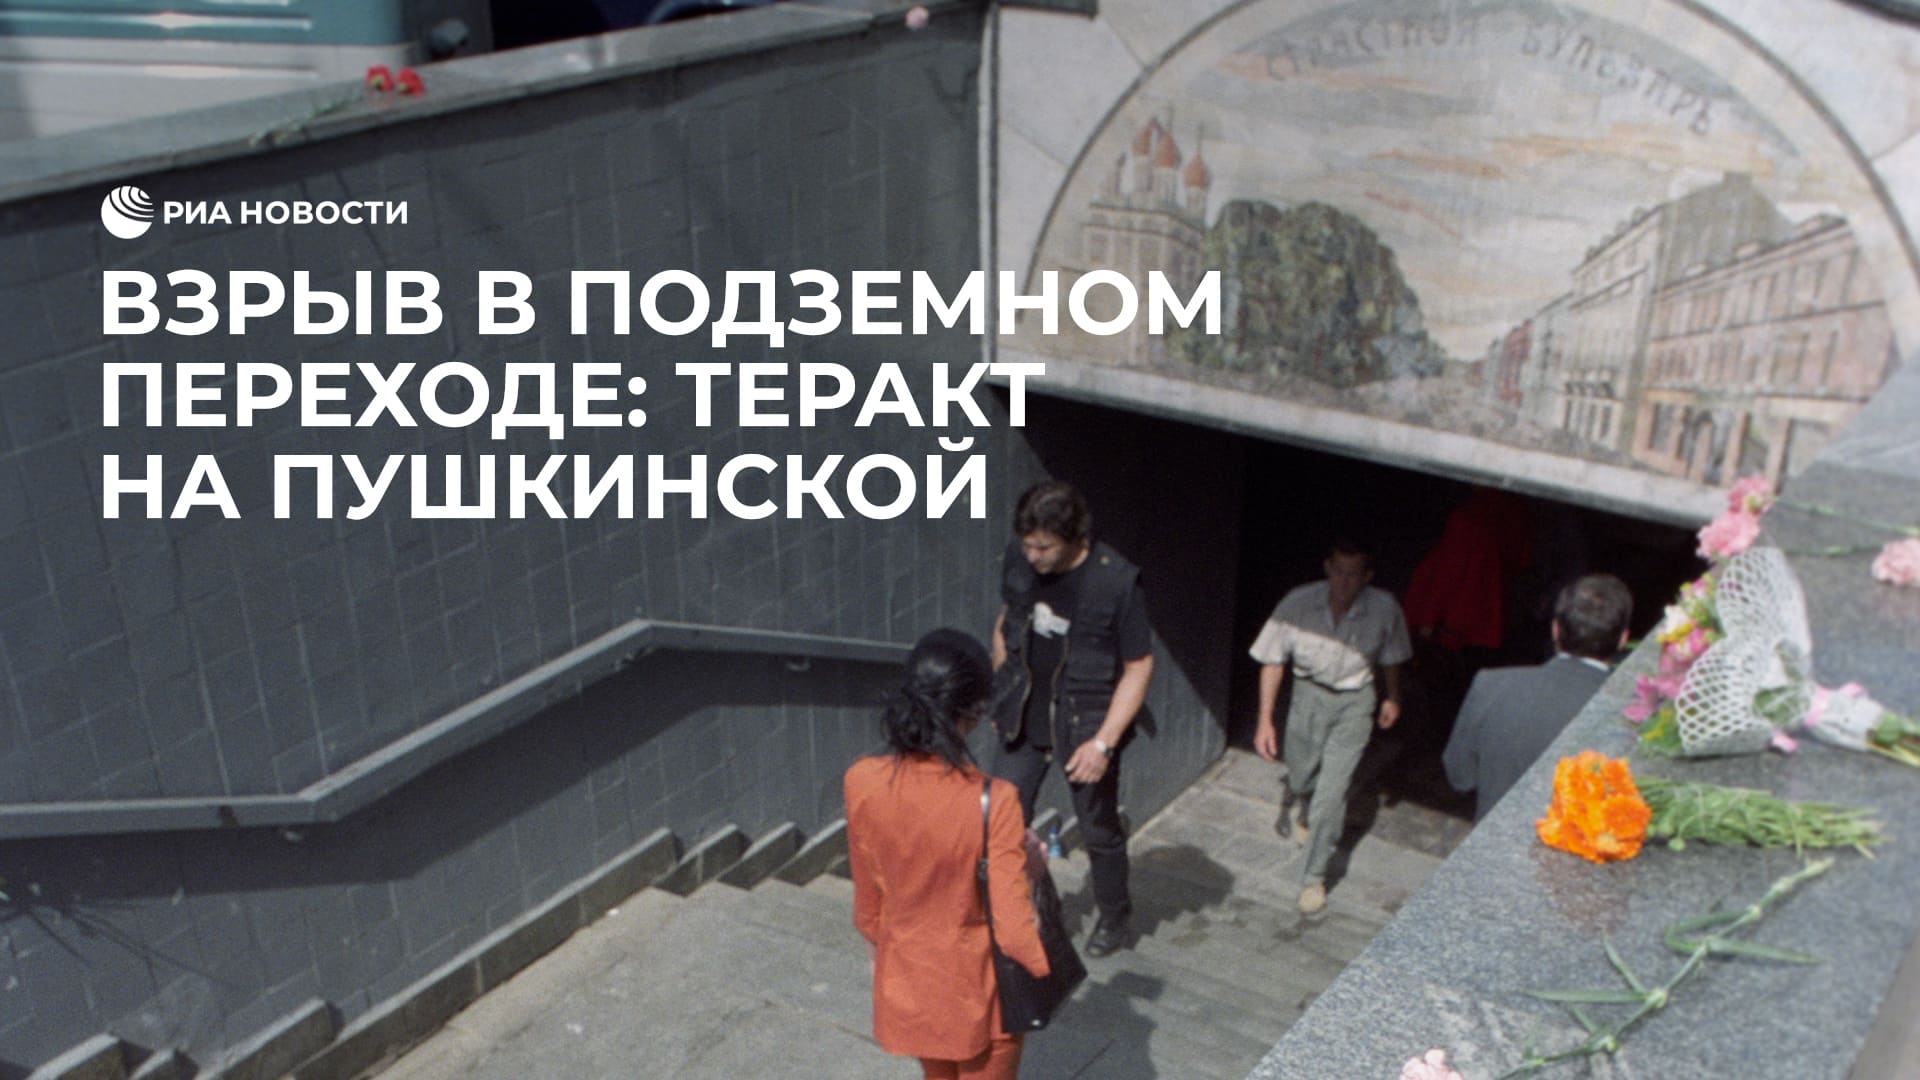 Теракт на пушкинской 2000. Теракт 8 августа 2000 года на Пушкинской площади. Взрыв в подземном переходе под Пушкинской площадью.